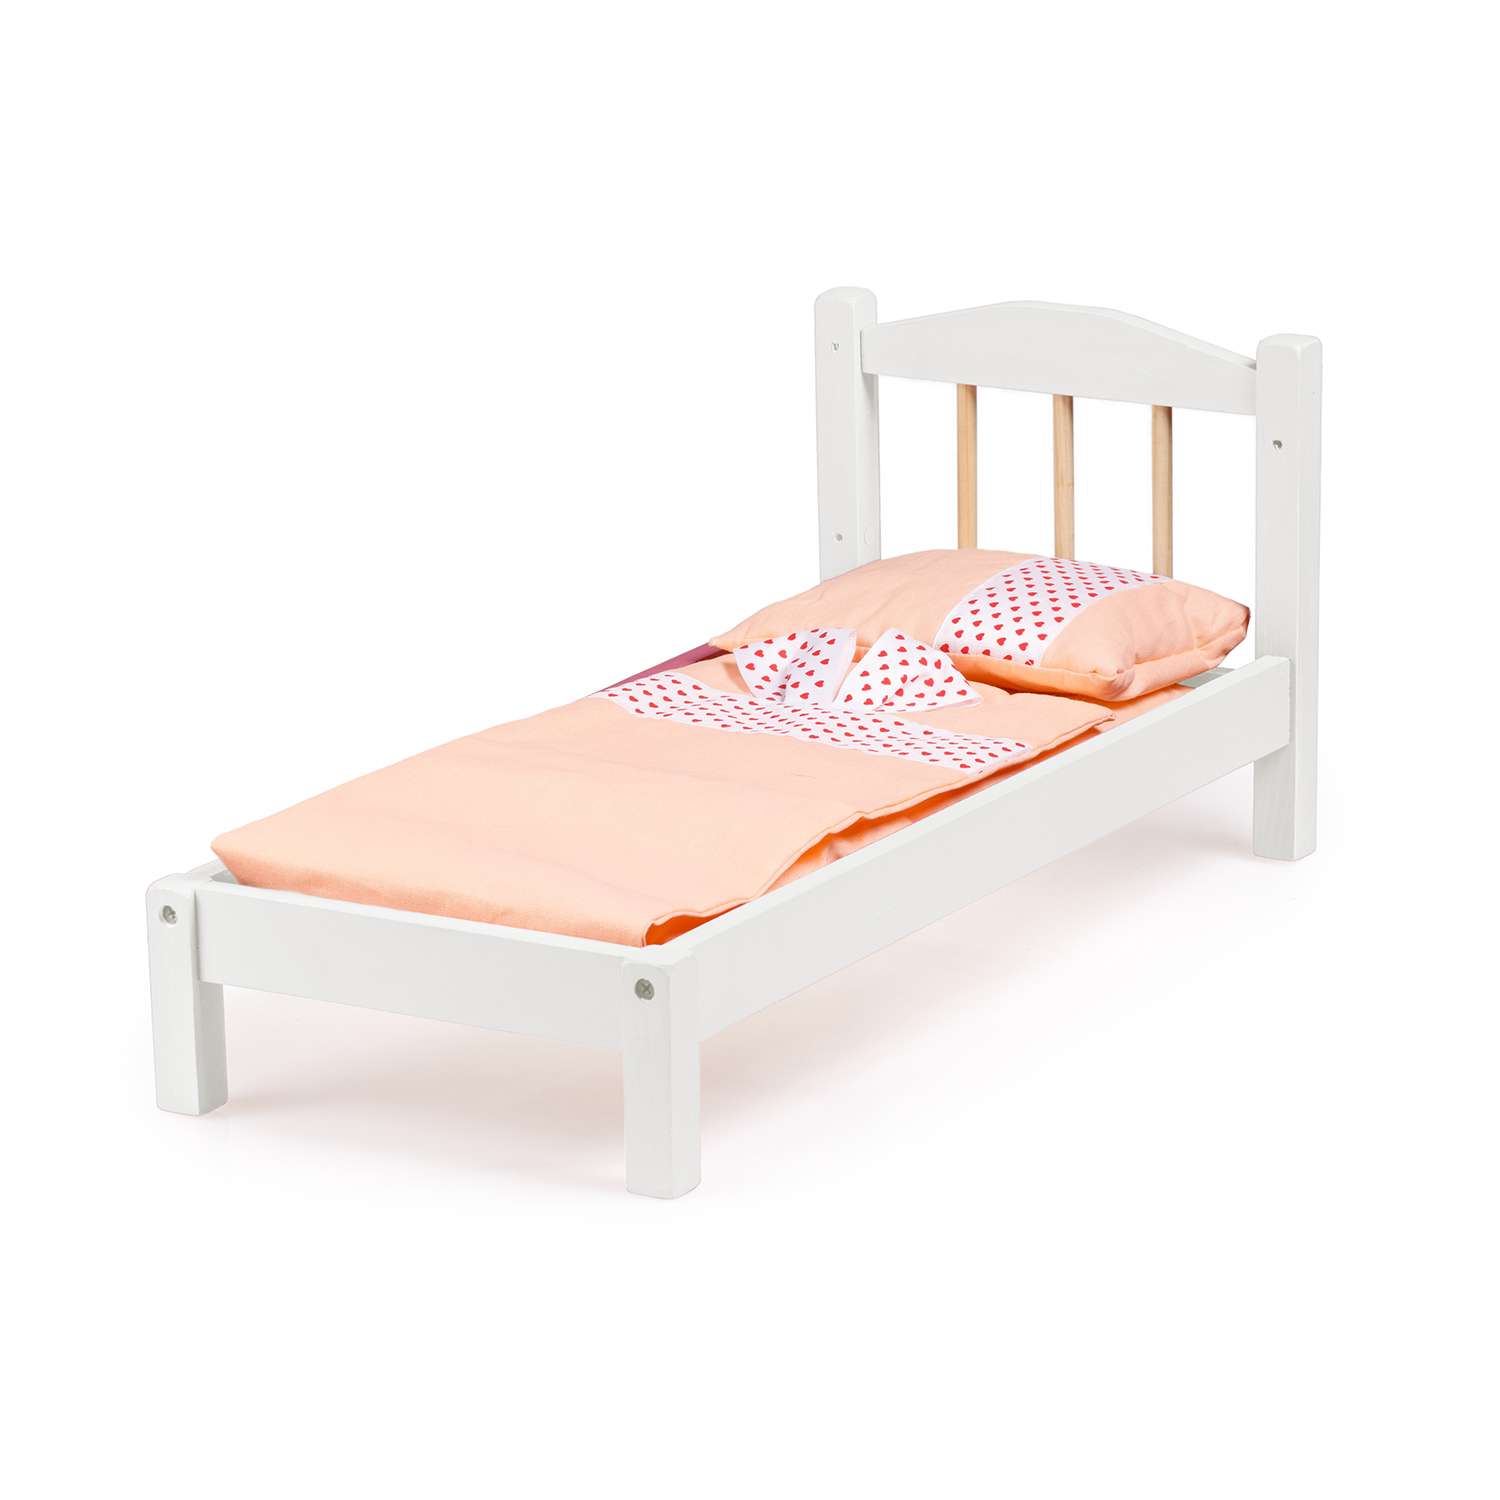 Кроватка для кукол Тутси с одной спинкой белая деревянная 1-297-2021 - фото 1